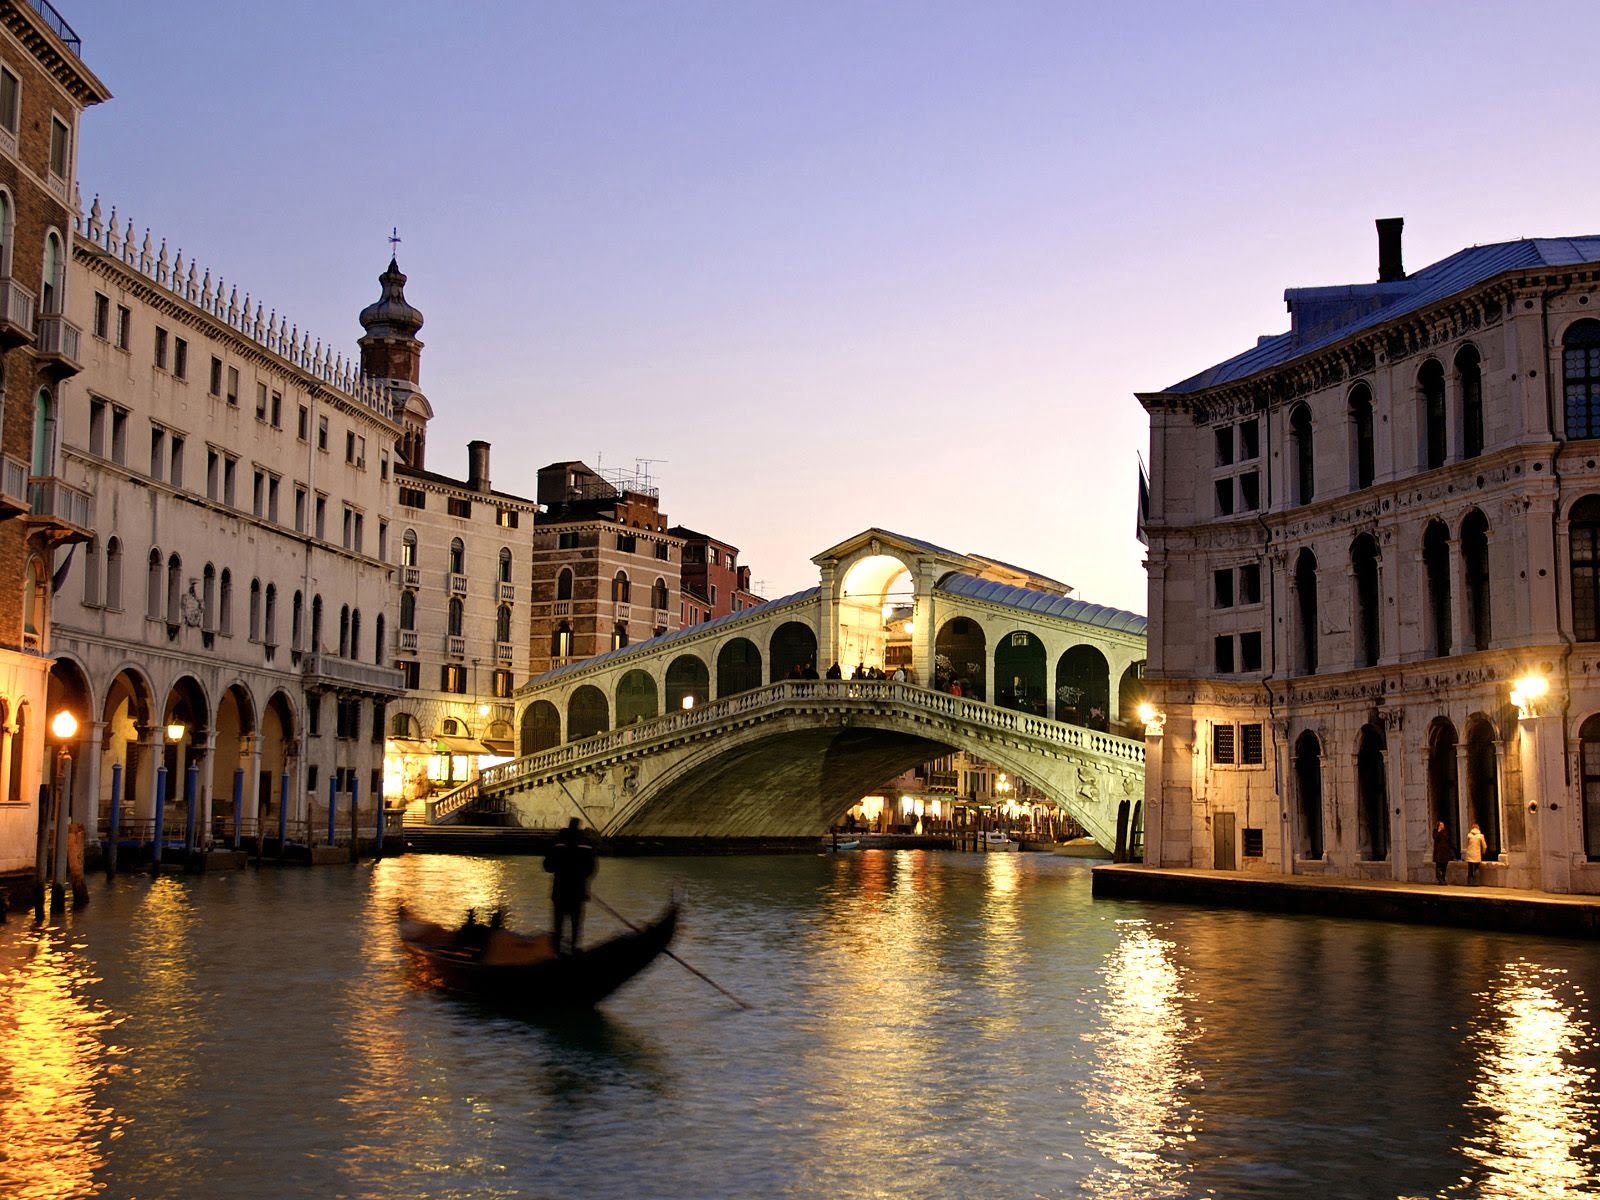 The Rialto Bridge, the best known bridge in Venice